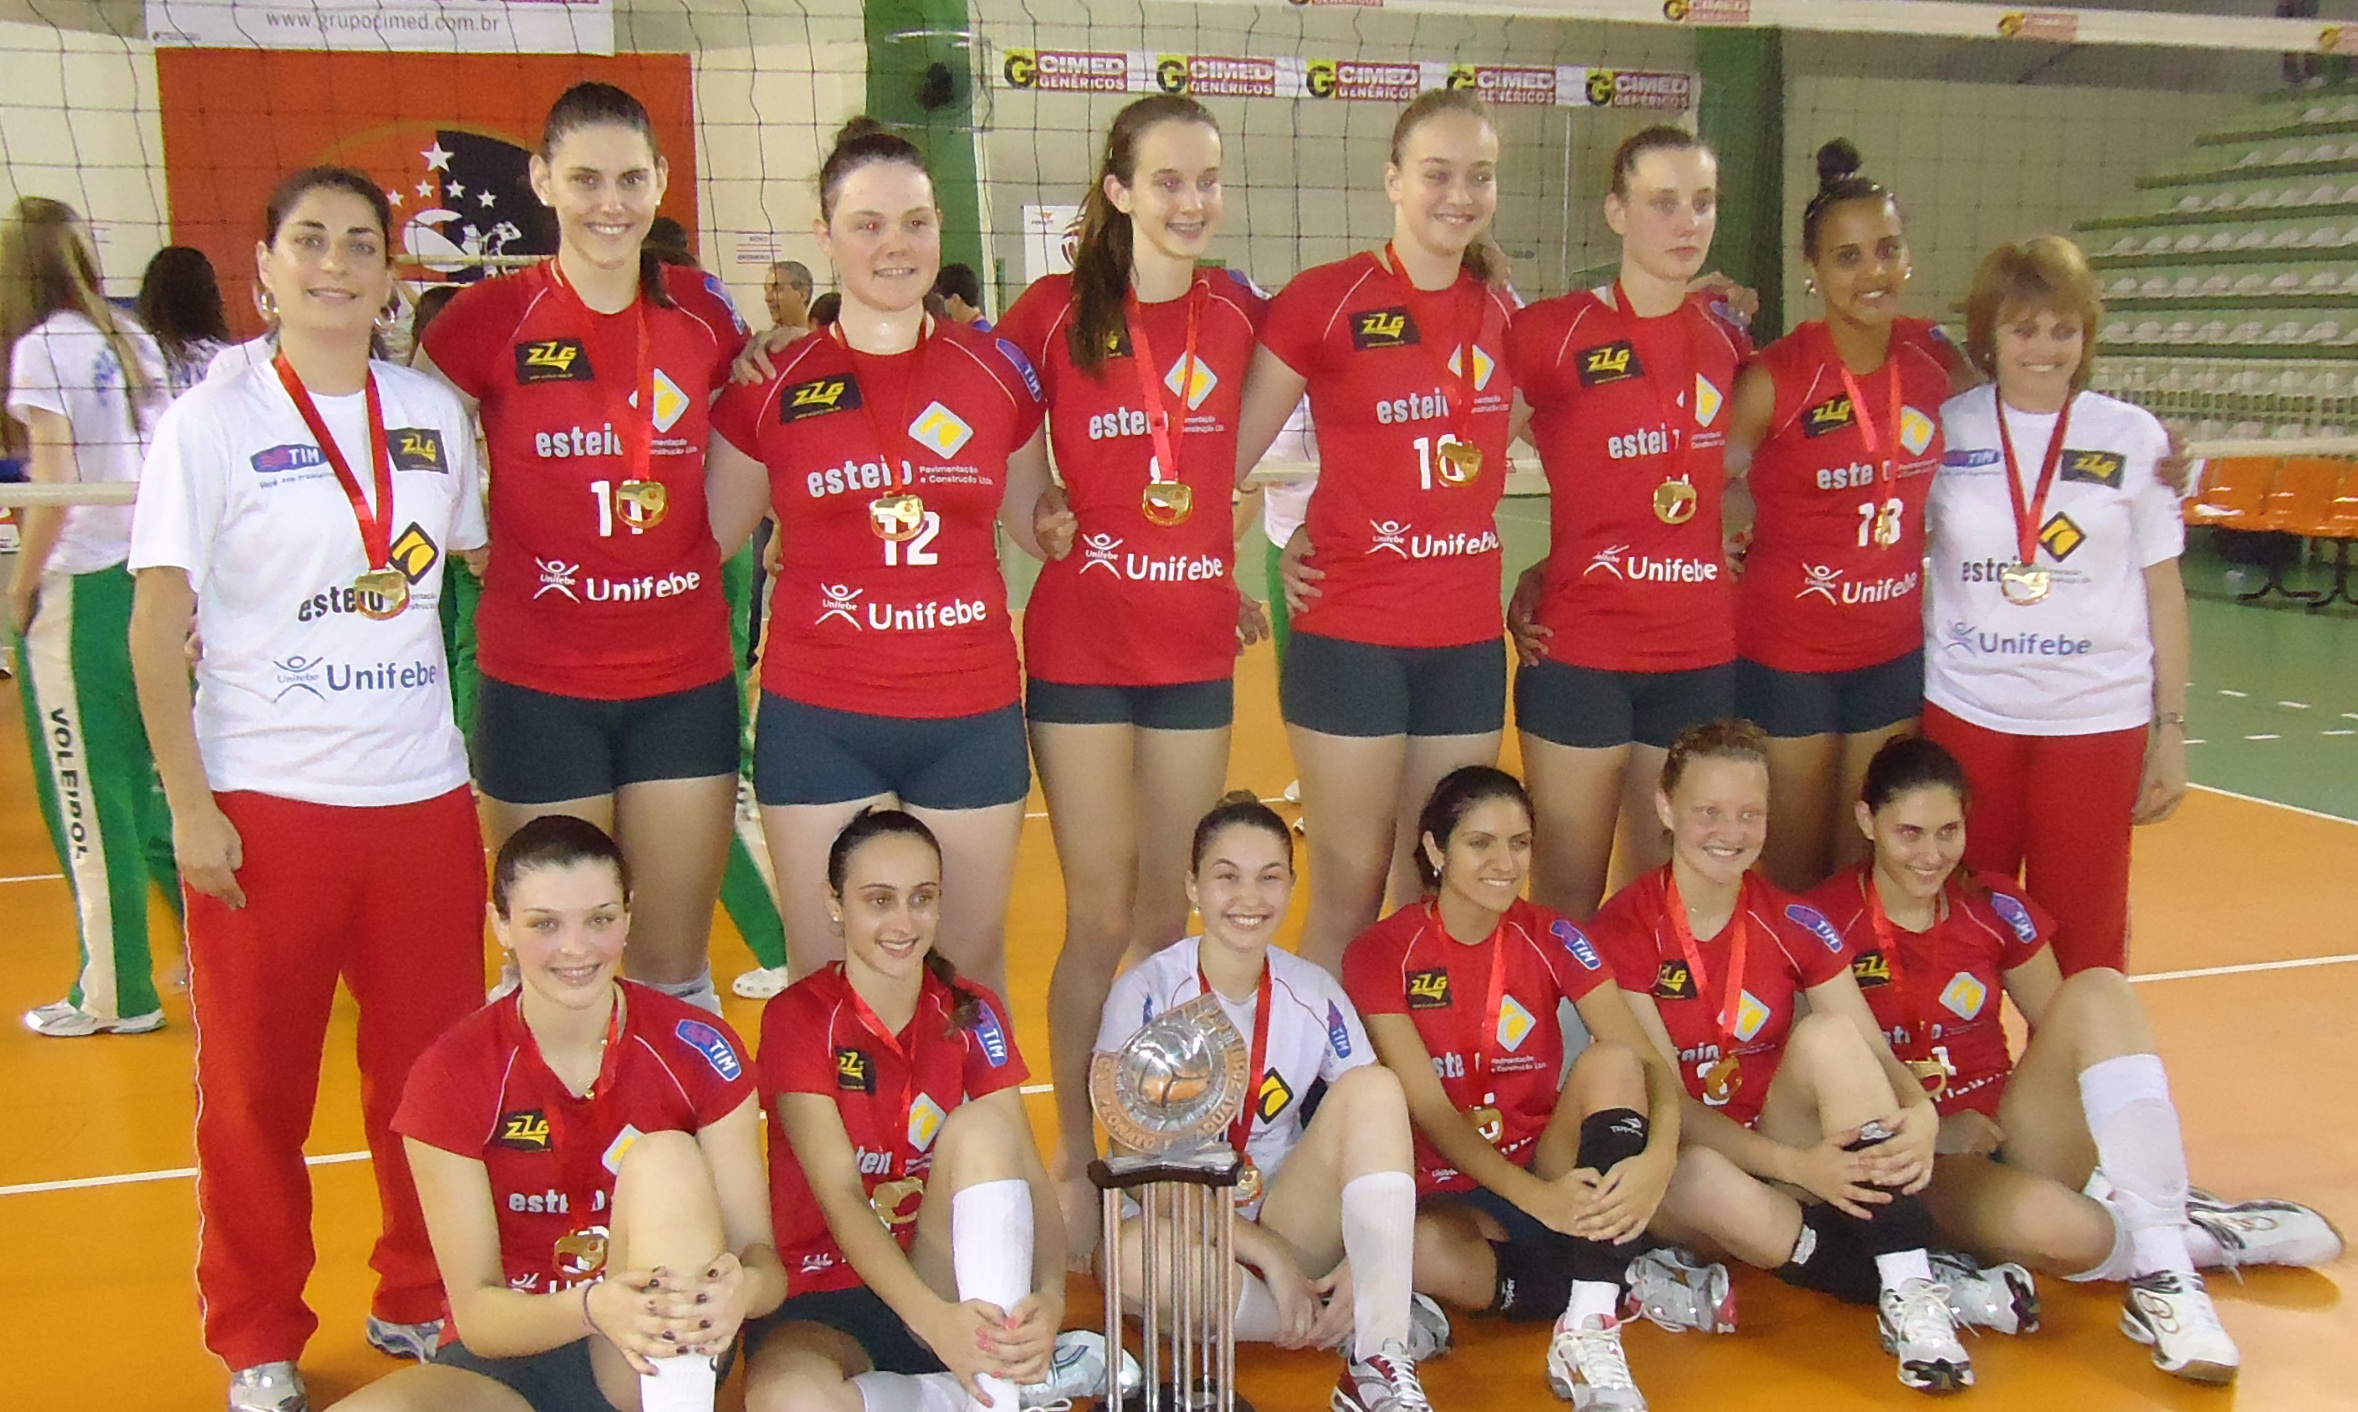 Equipe de vôlei patrocinada pela Unifebe ganha campeonato